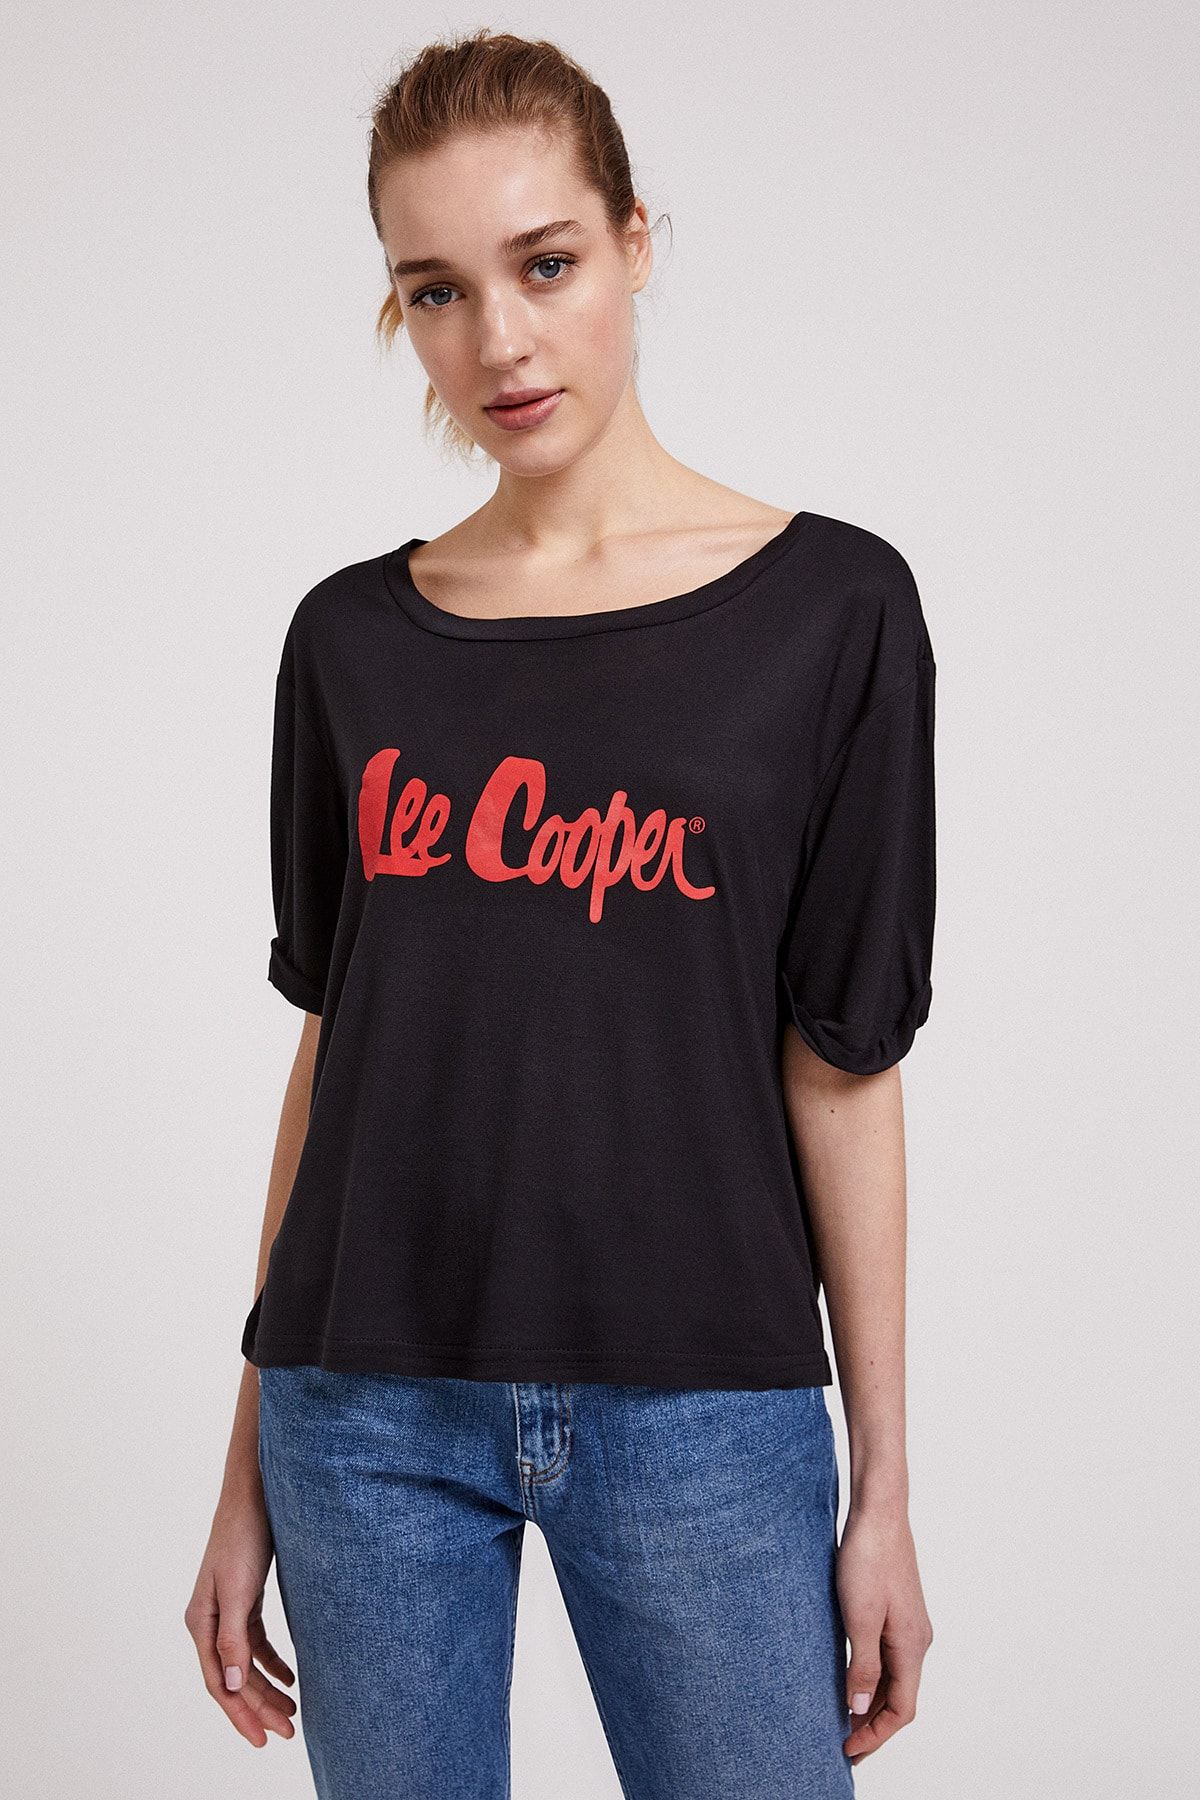 Lee Cooper Kadın Londons O Yaka T-Shirt Siyah 202 LCF 242026